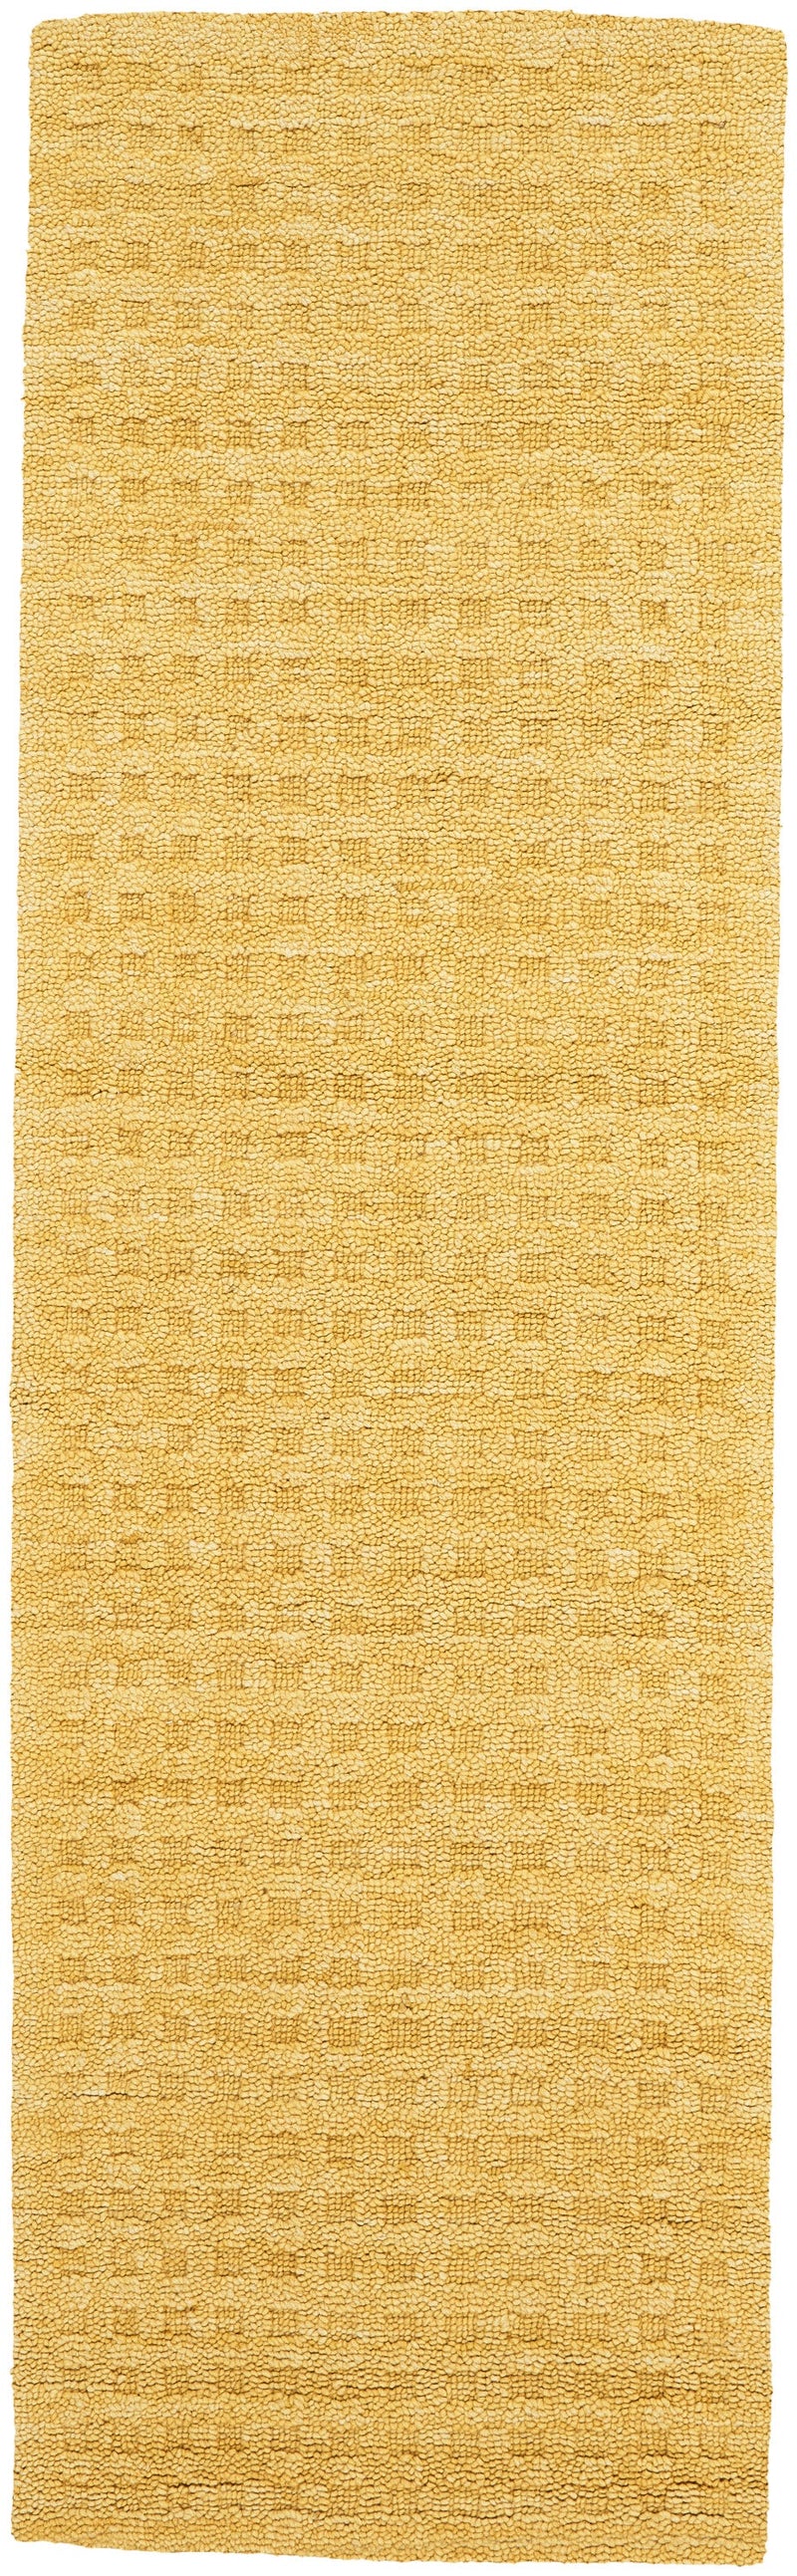 media image for marana handmade gold rug by nourison 99446400345 redo 2 213